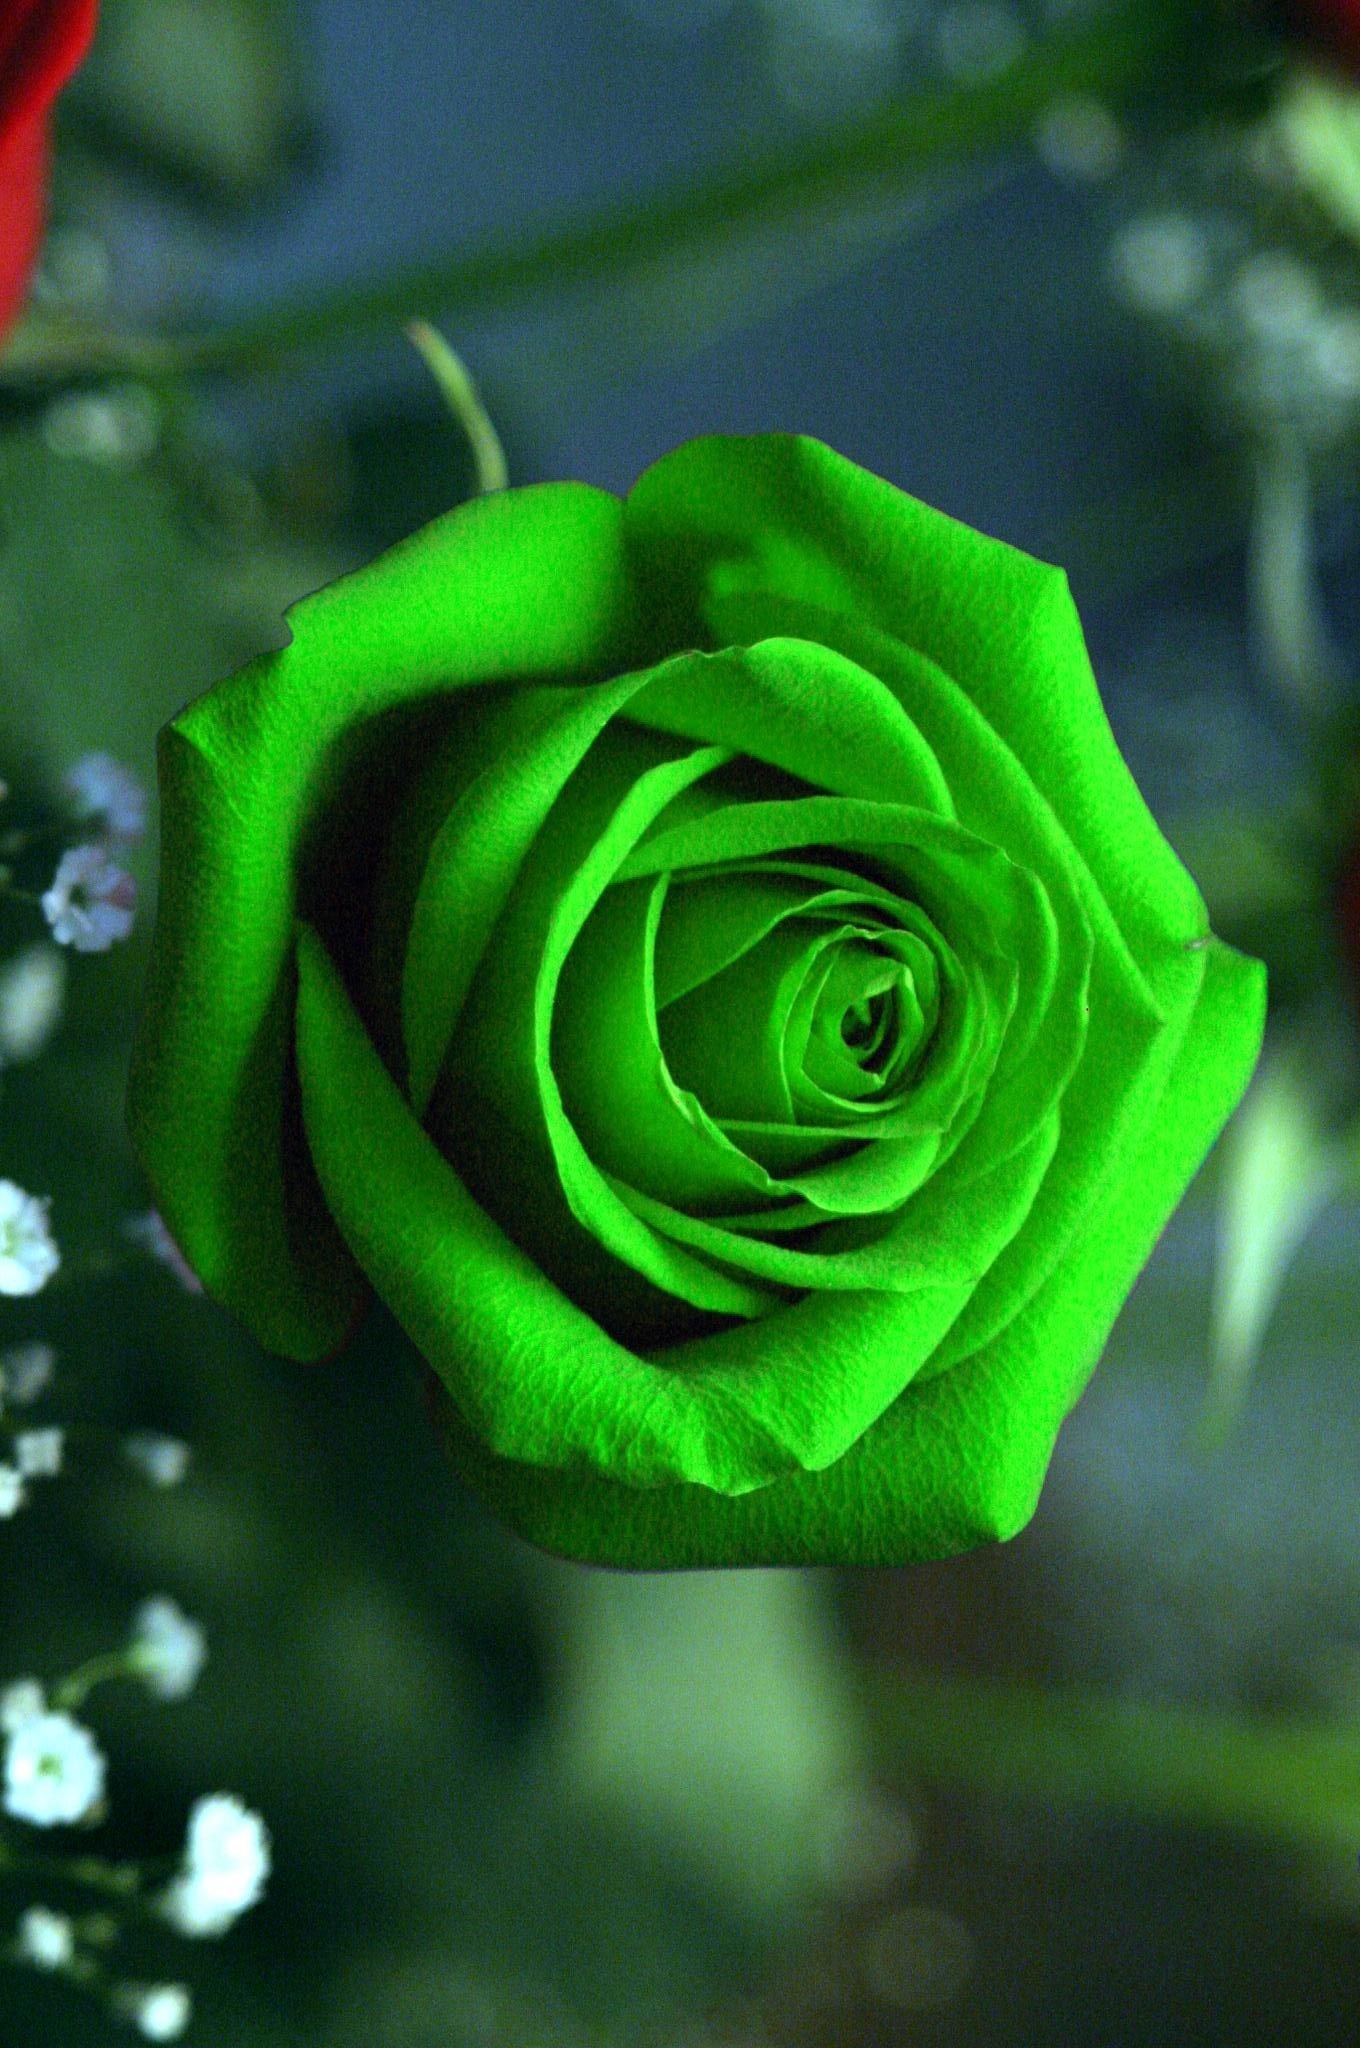 rose wallpaper,flower,flowering plant,rose,garden roses,green